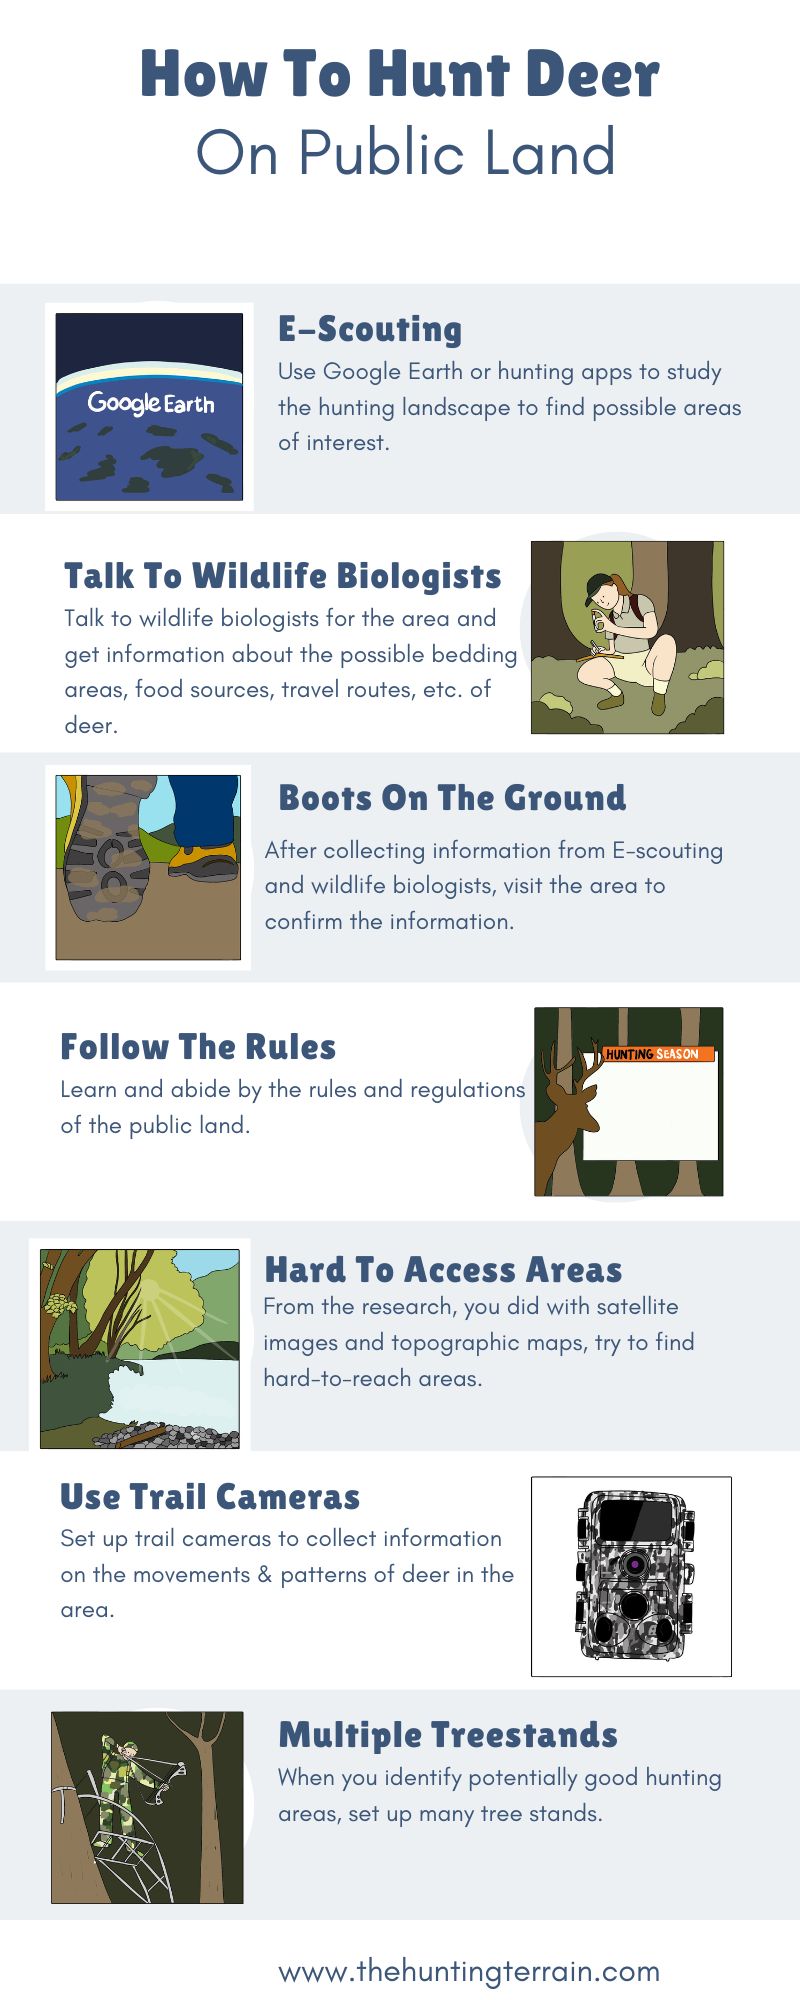 How To Hunt Deer On Public Land